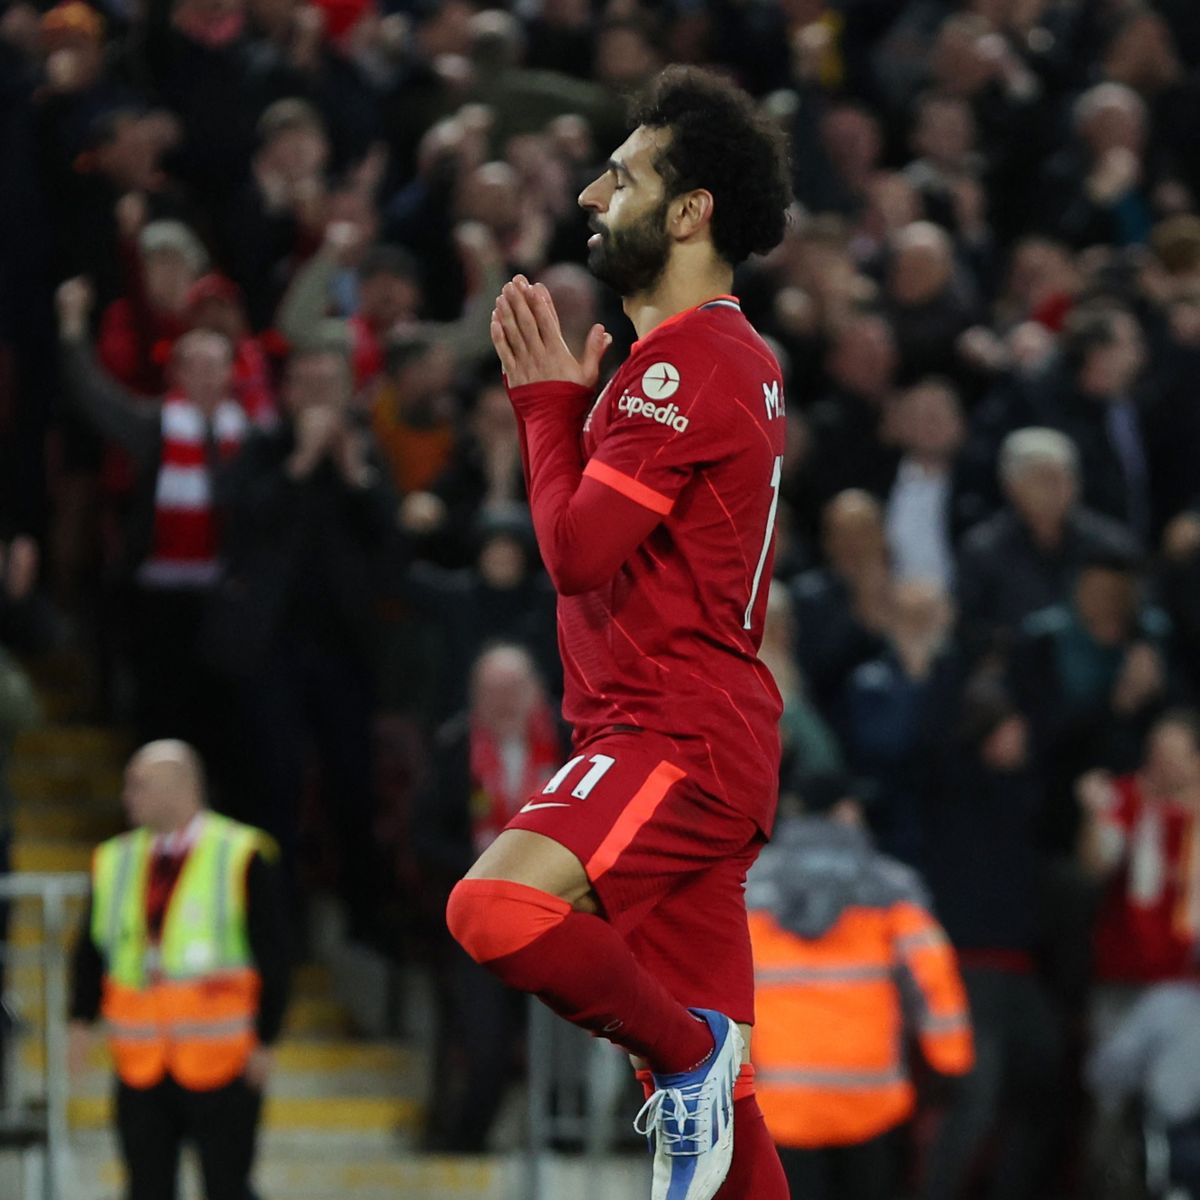 Mohamed Salah goal celebration explained as he brings back yoga gesture against Man Utd